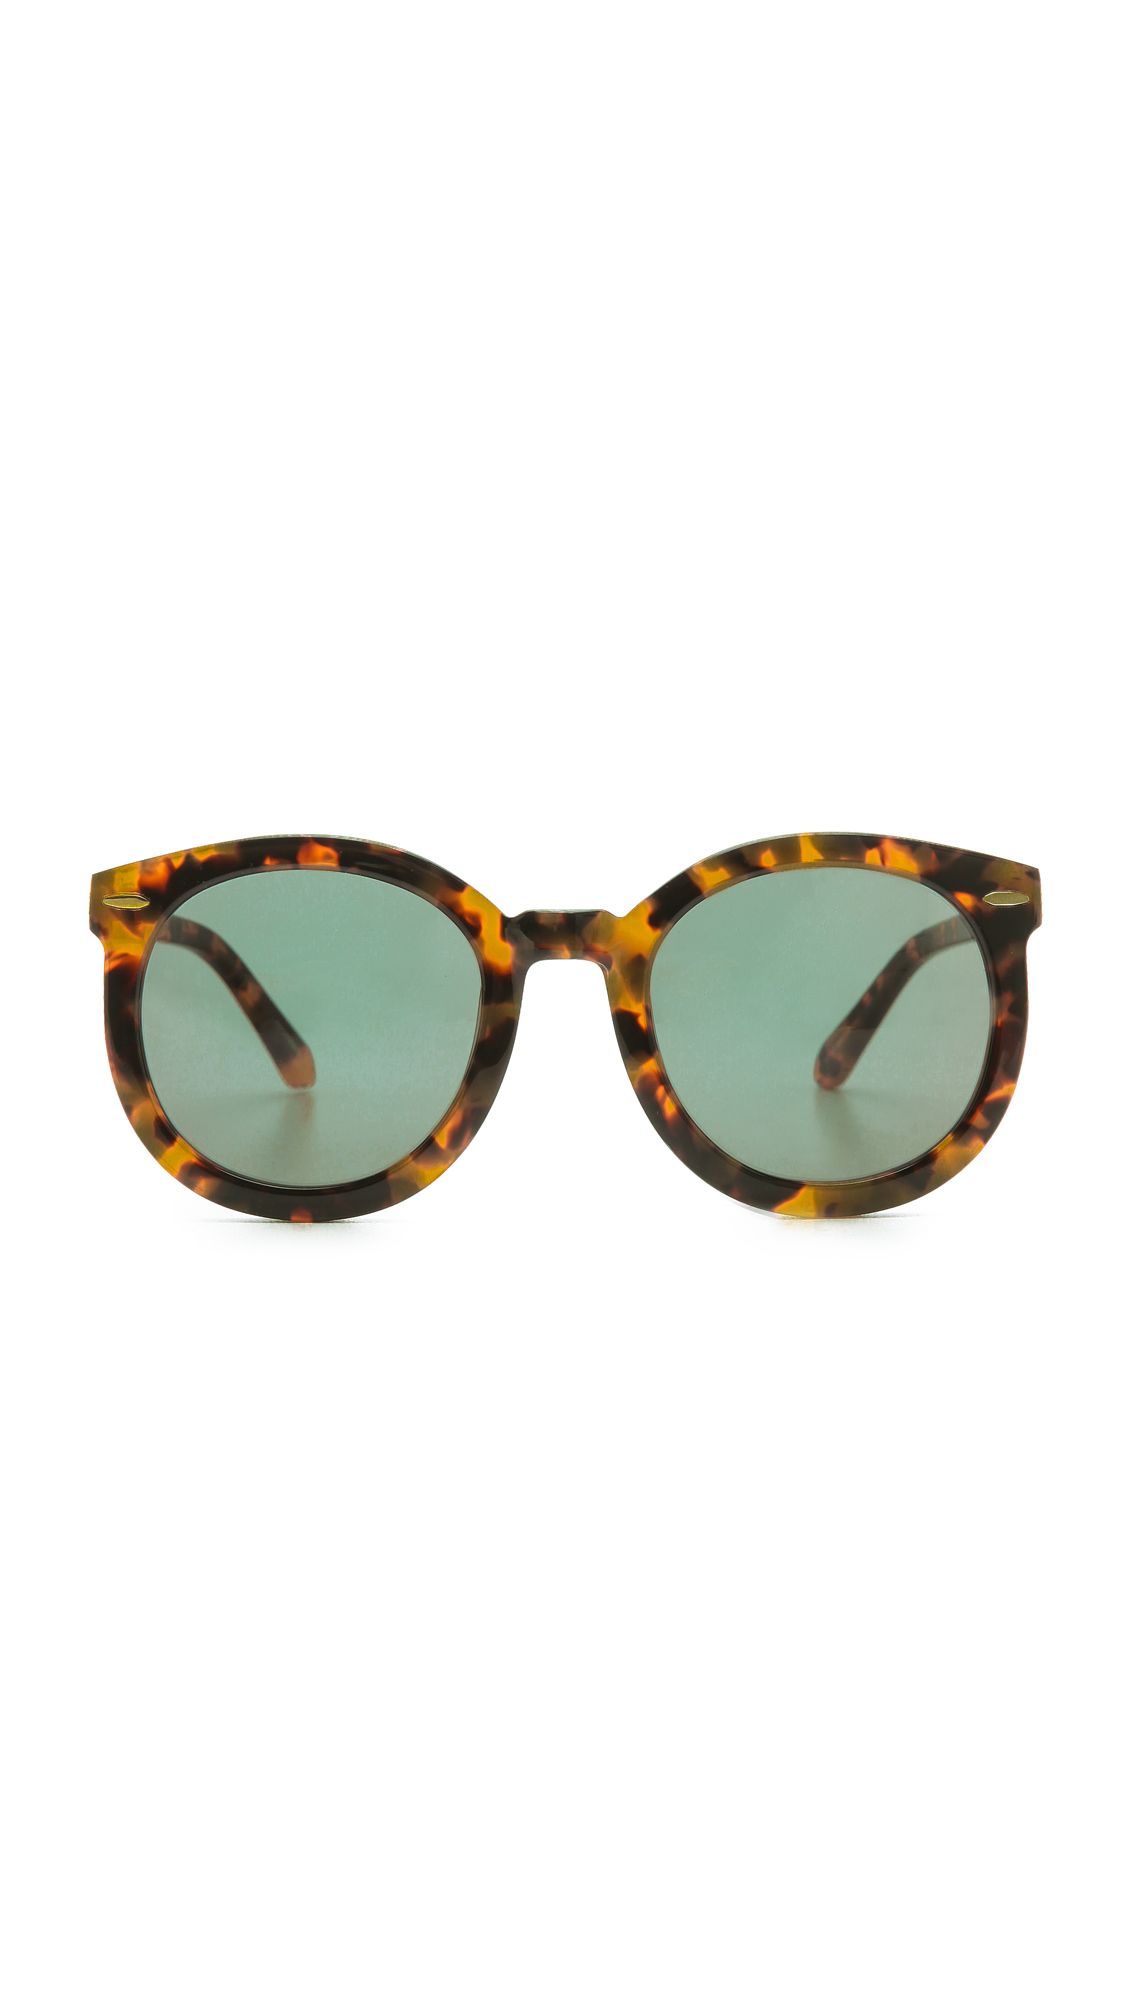 Super Duper Strength Sunglasses | Shopbop